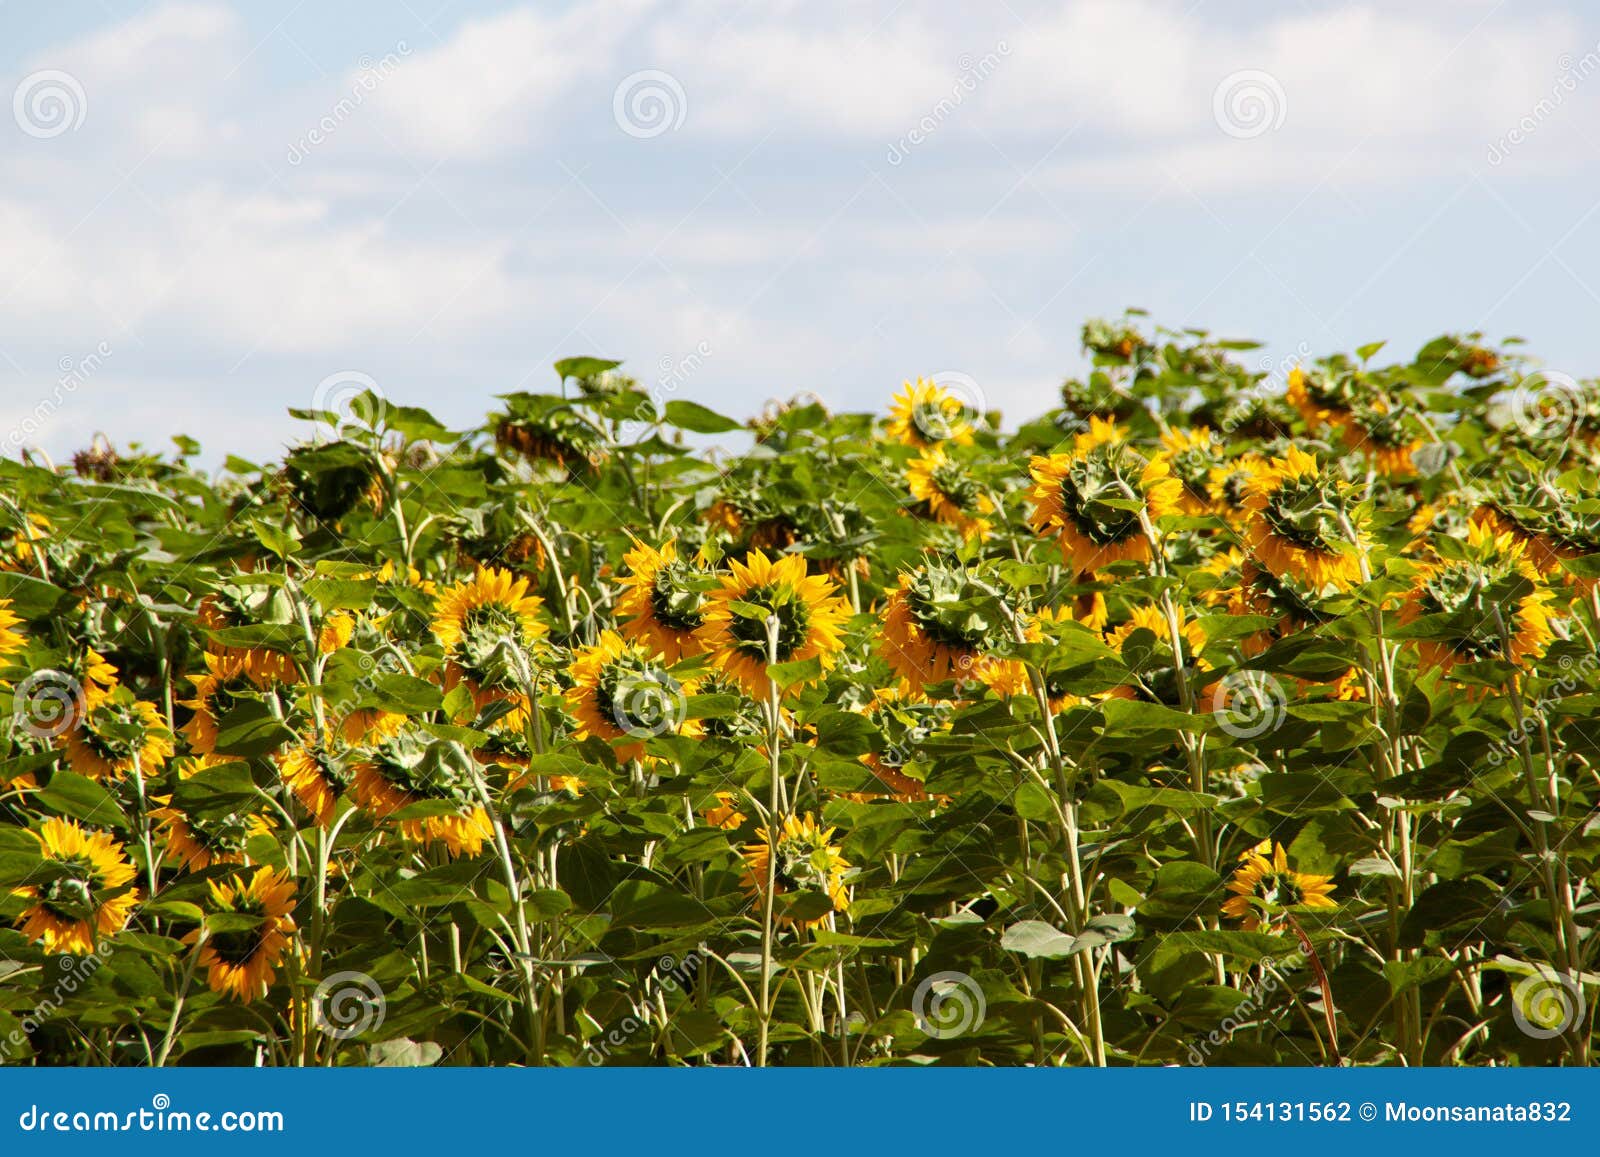 sunflower field and blue sky. summer